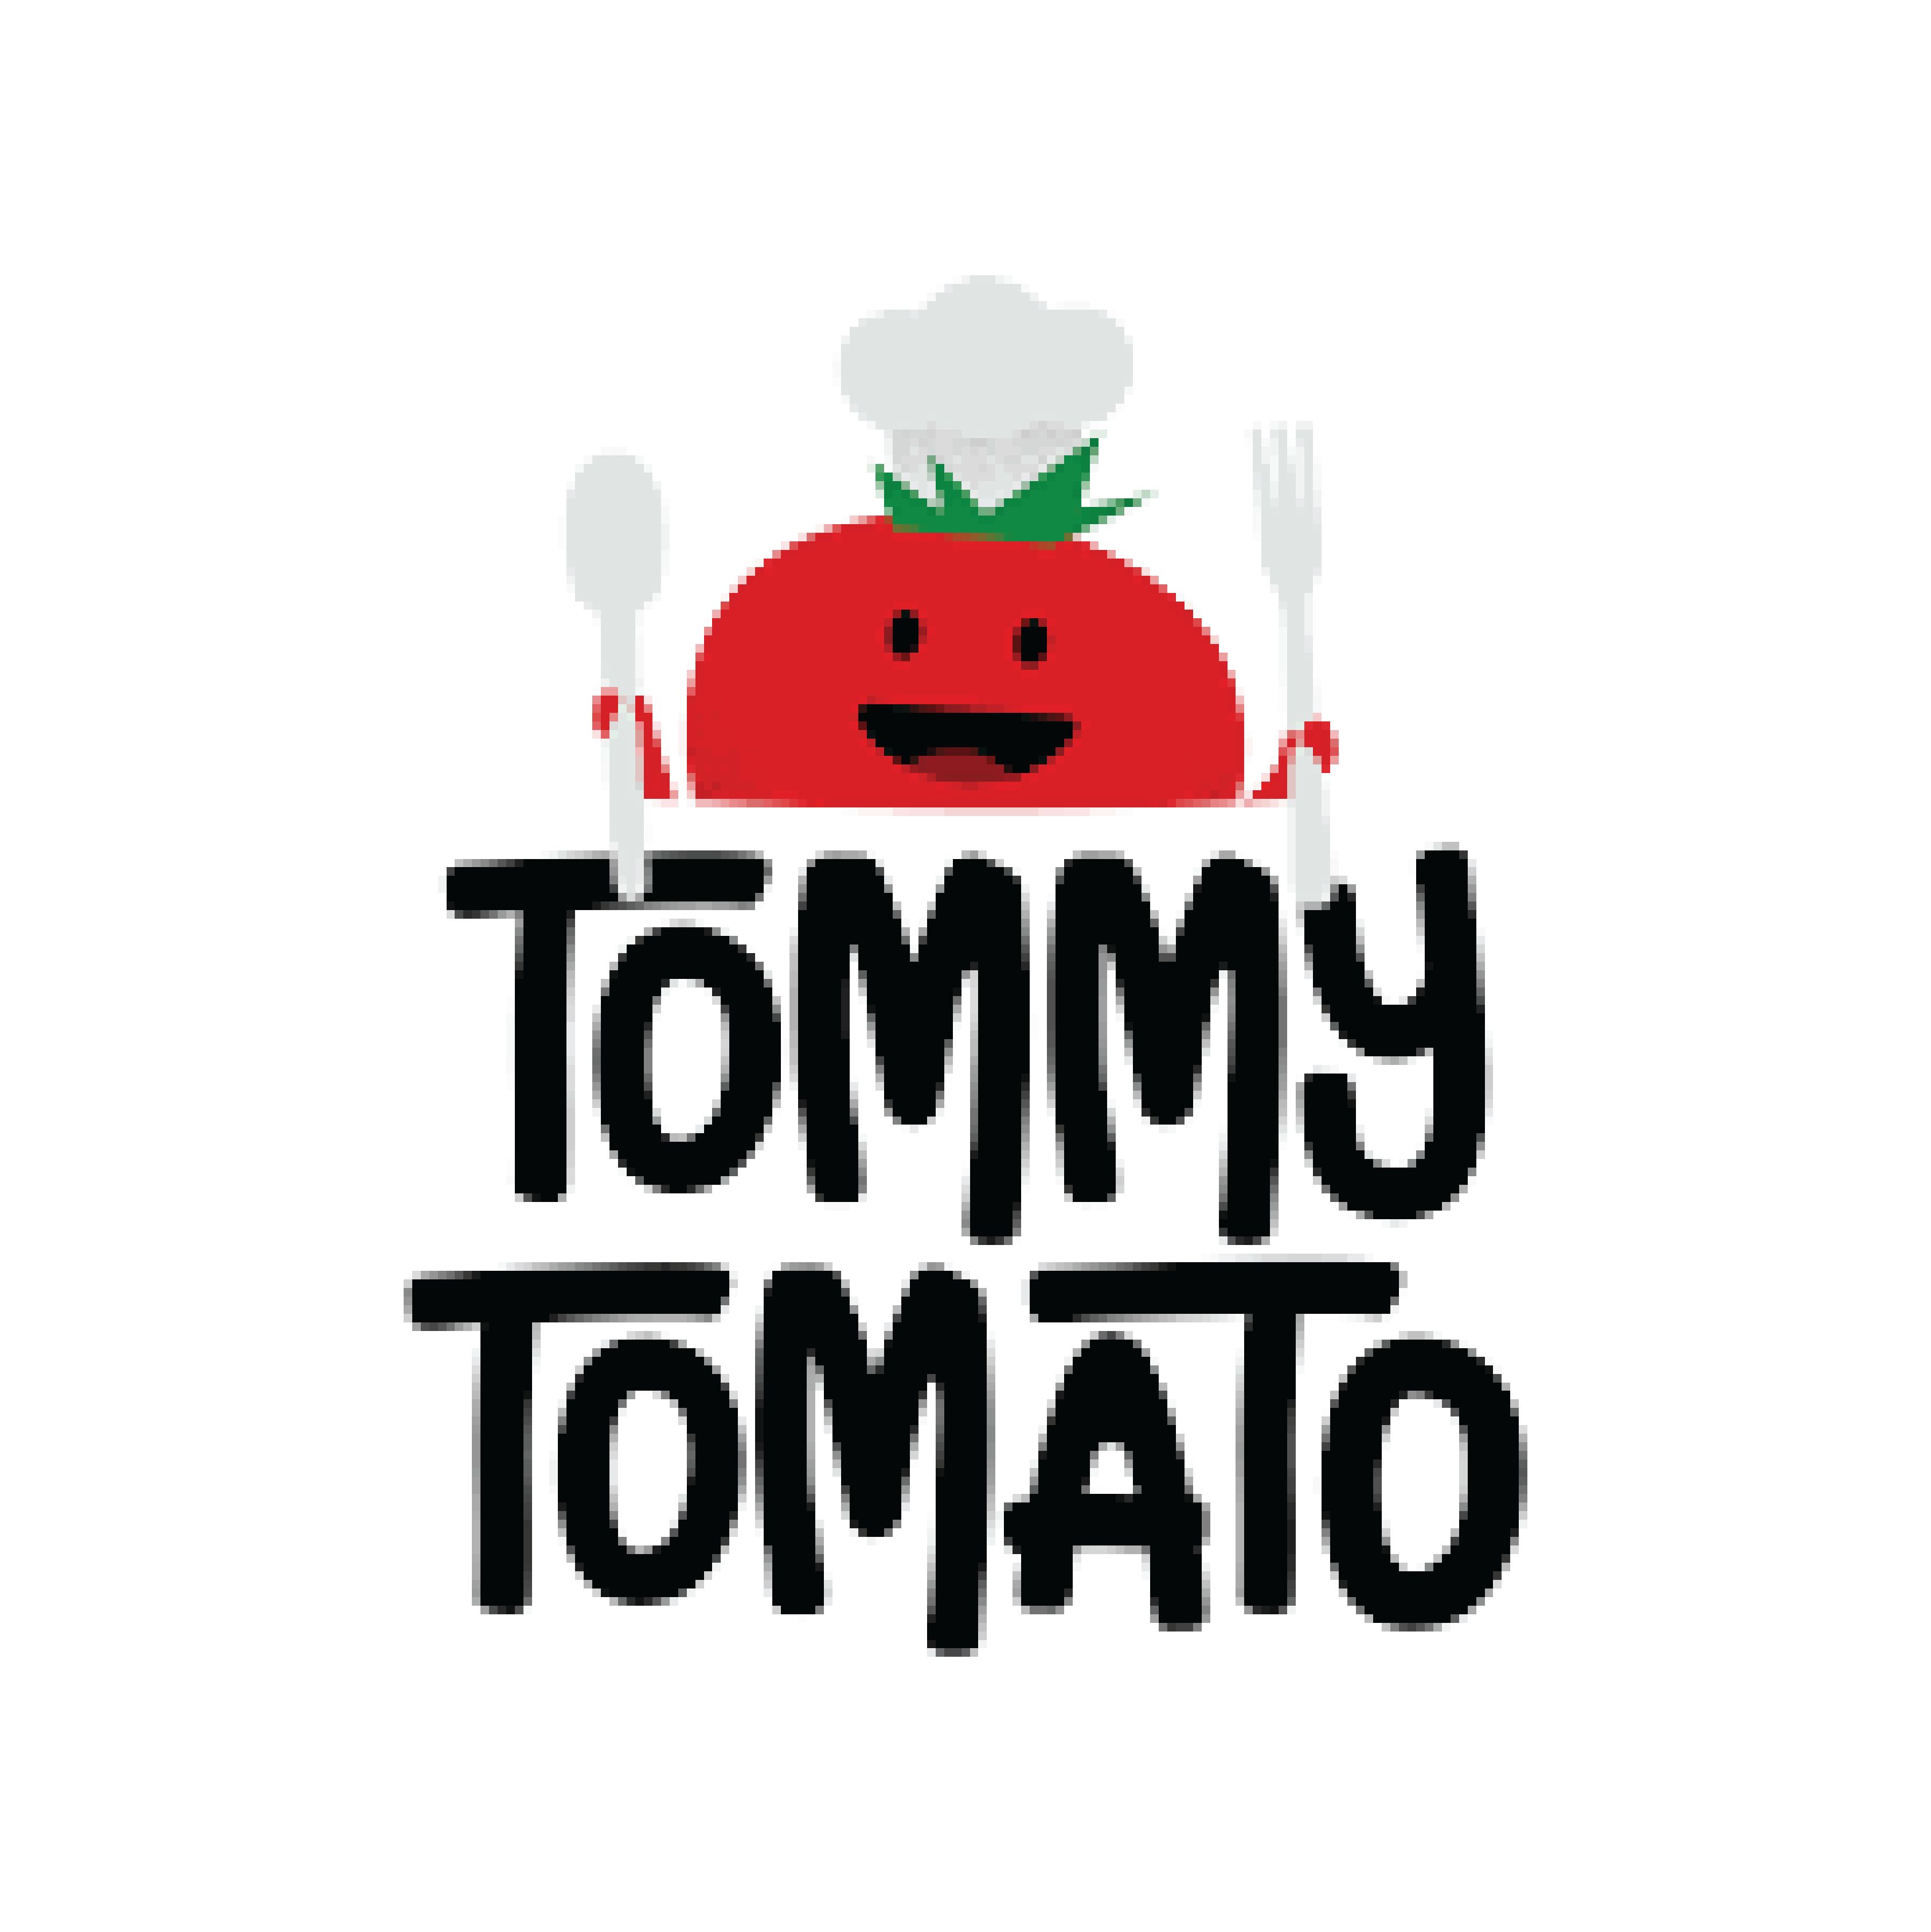 Logo TommyTomato